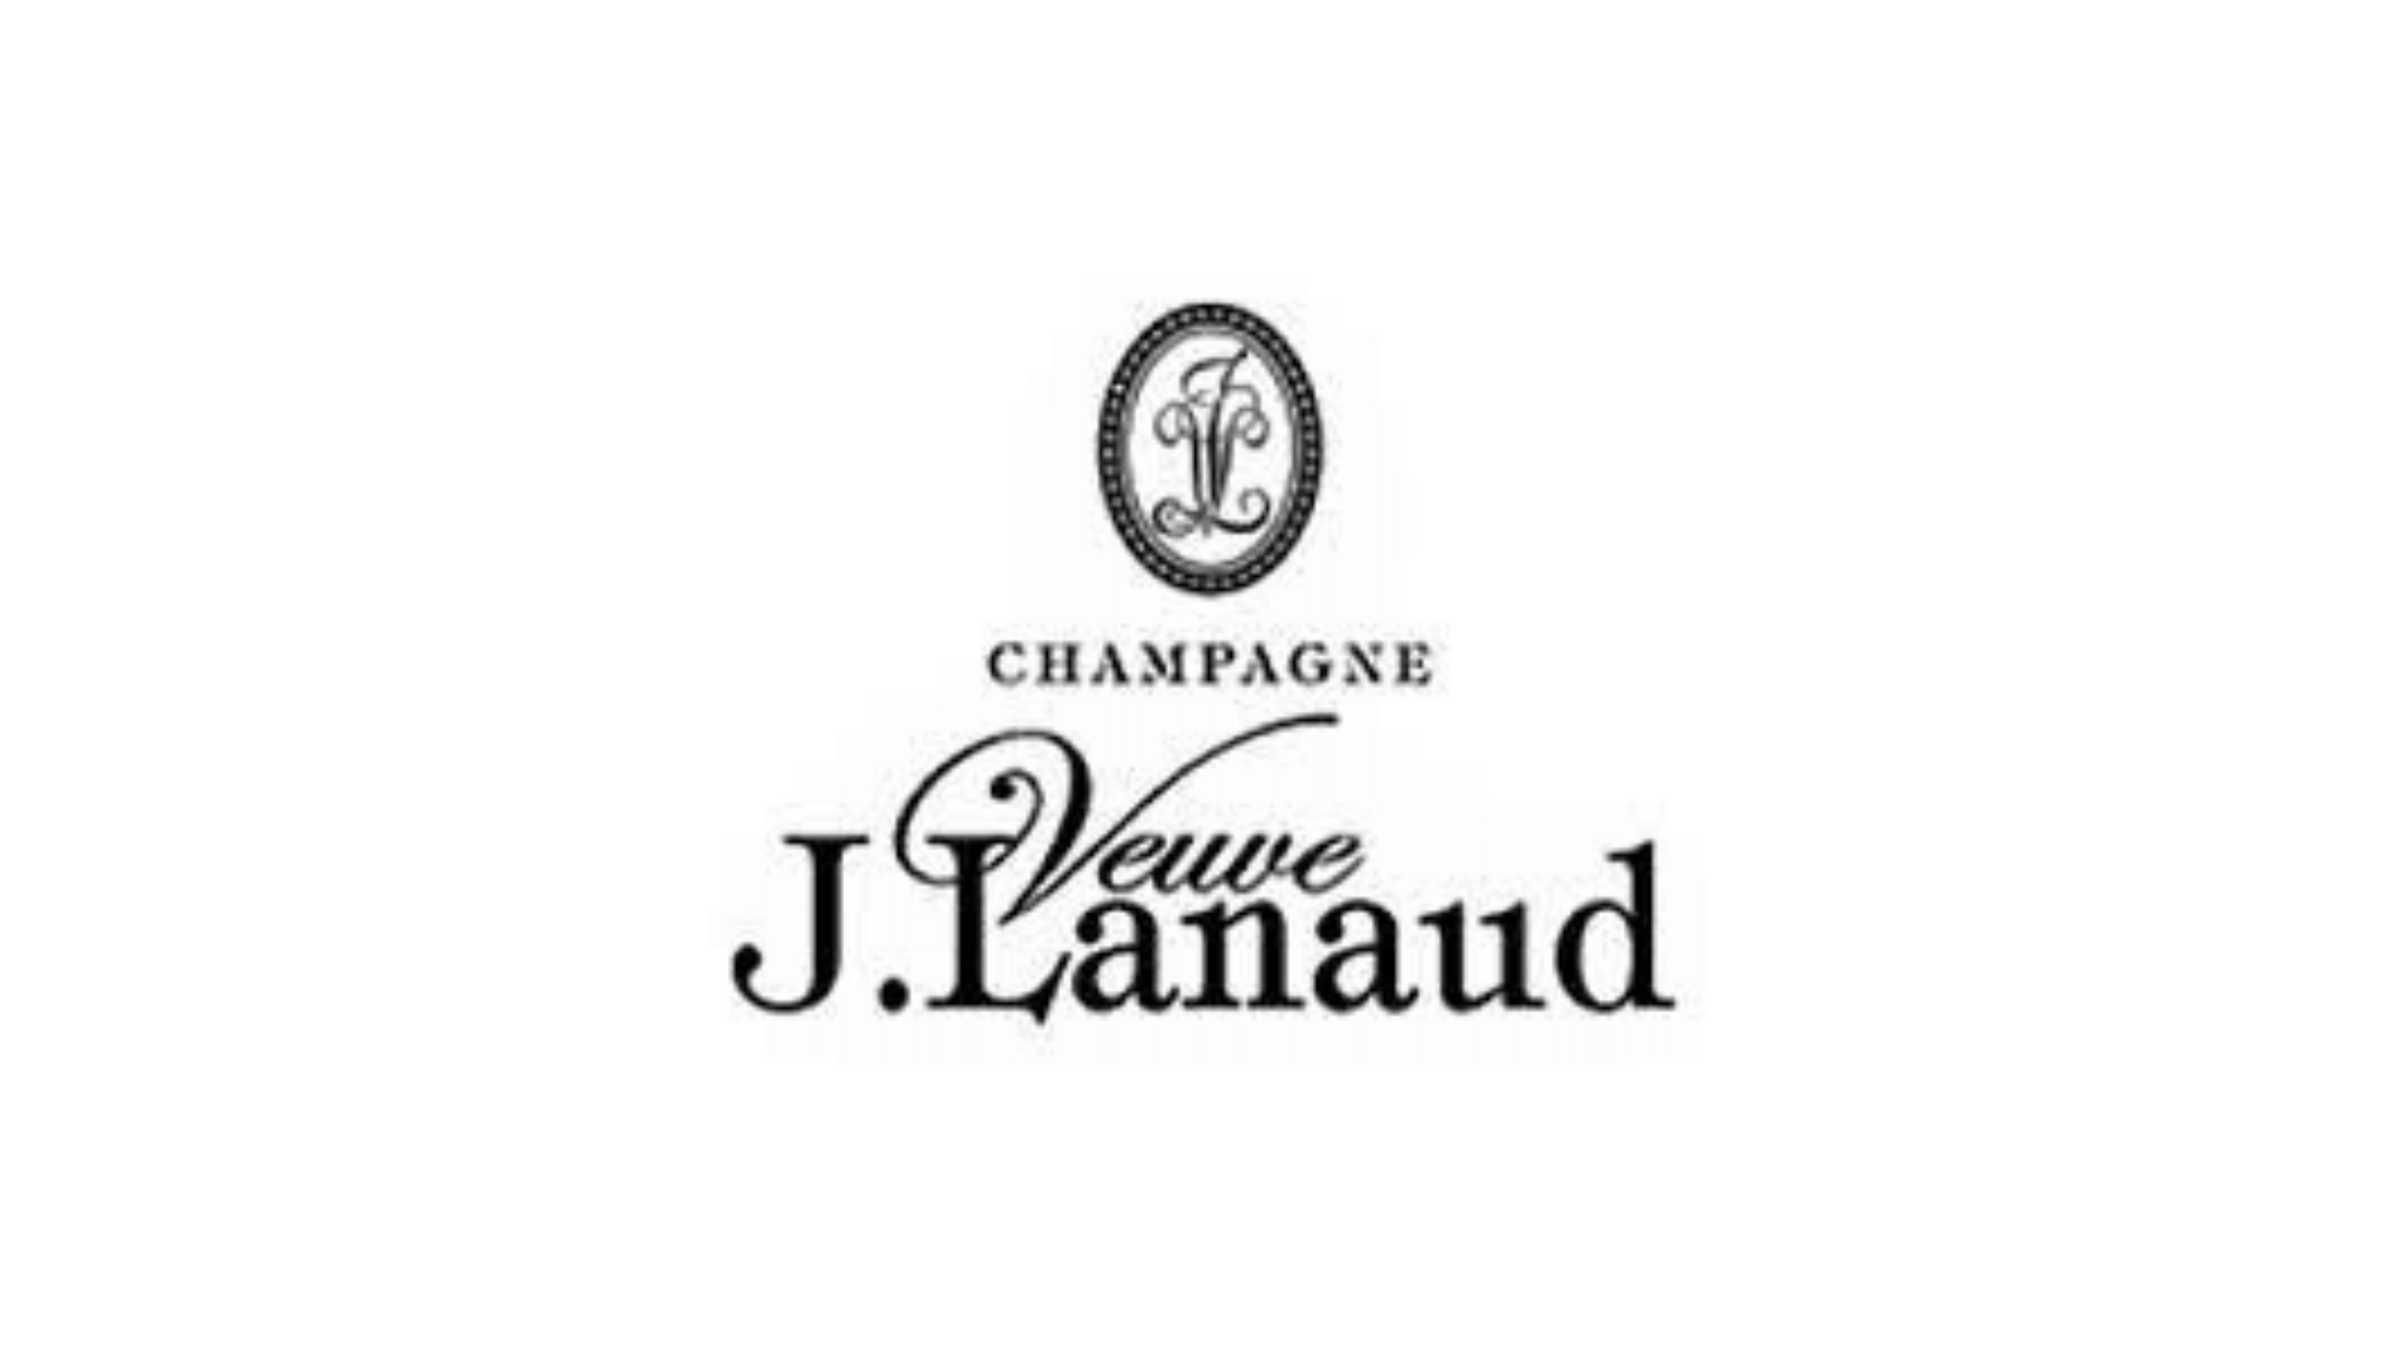 Champagnifique – J. Lanaud Veuve